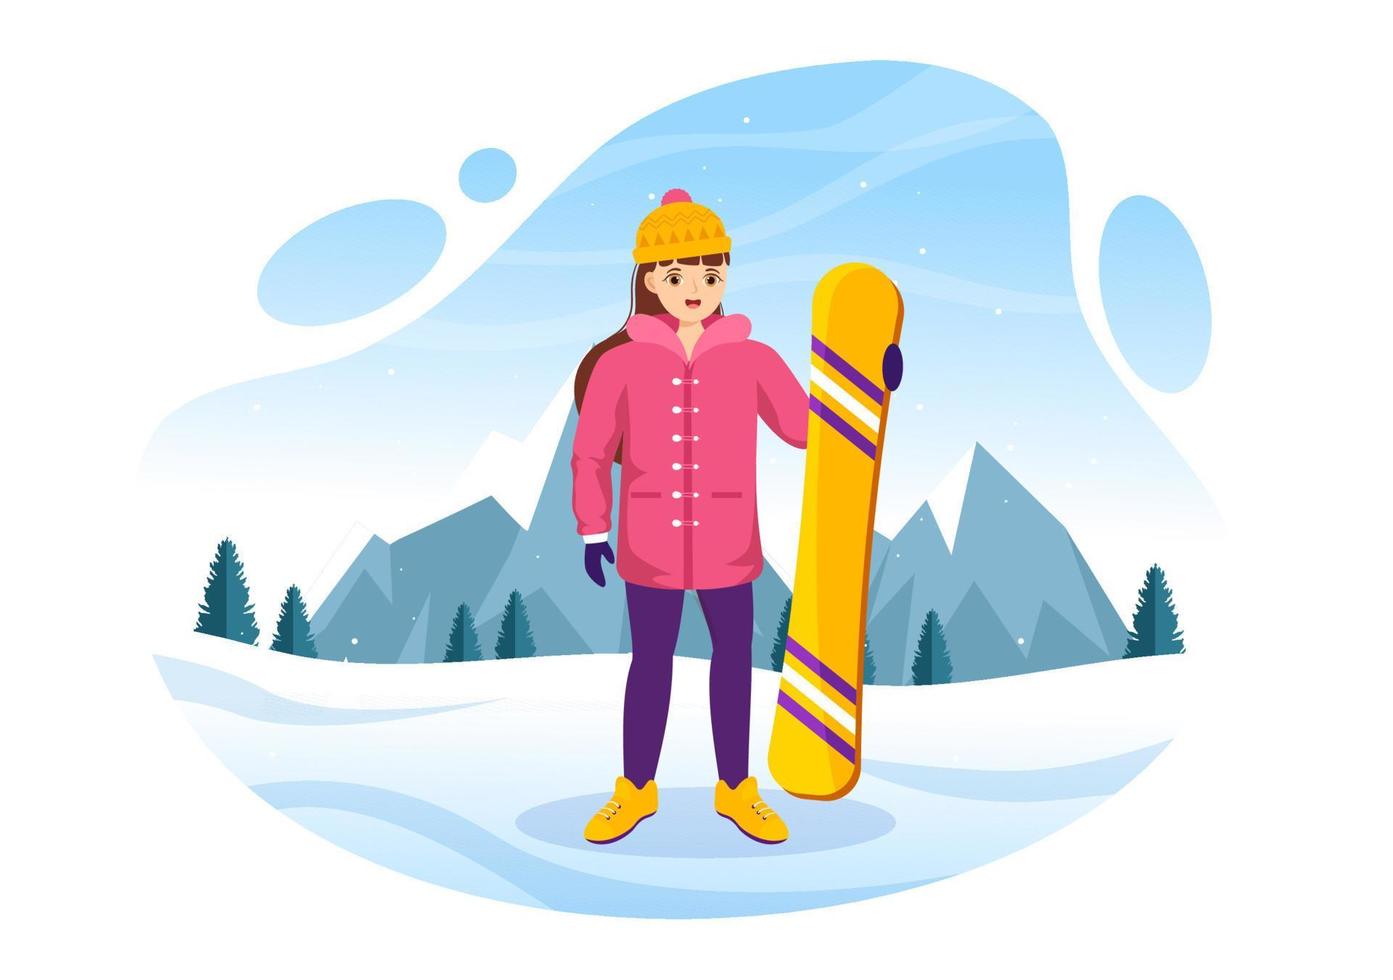 snowboard con personas deslizándose y saltando en la ladera de una montaña nevada o pendiente dentro de dibujos animados planos dibujados a mano ilustración de plantillas vector